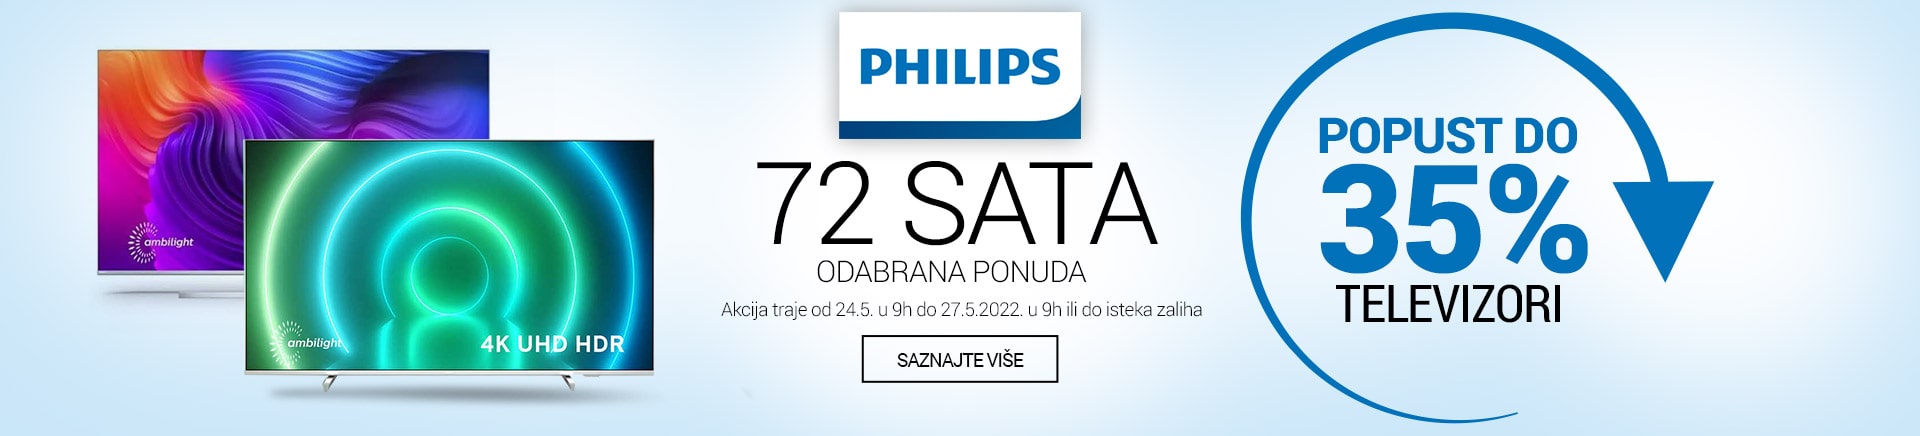 72 sata - Philips Televizori do 35% popusta